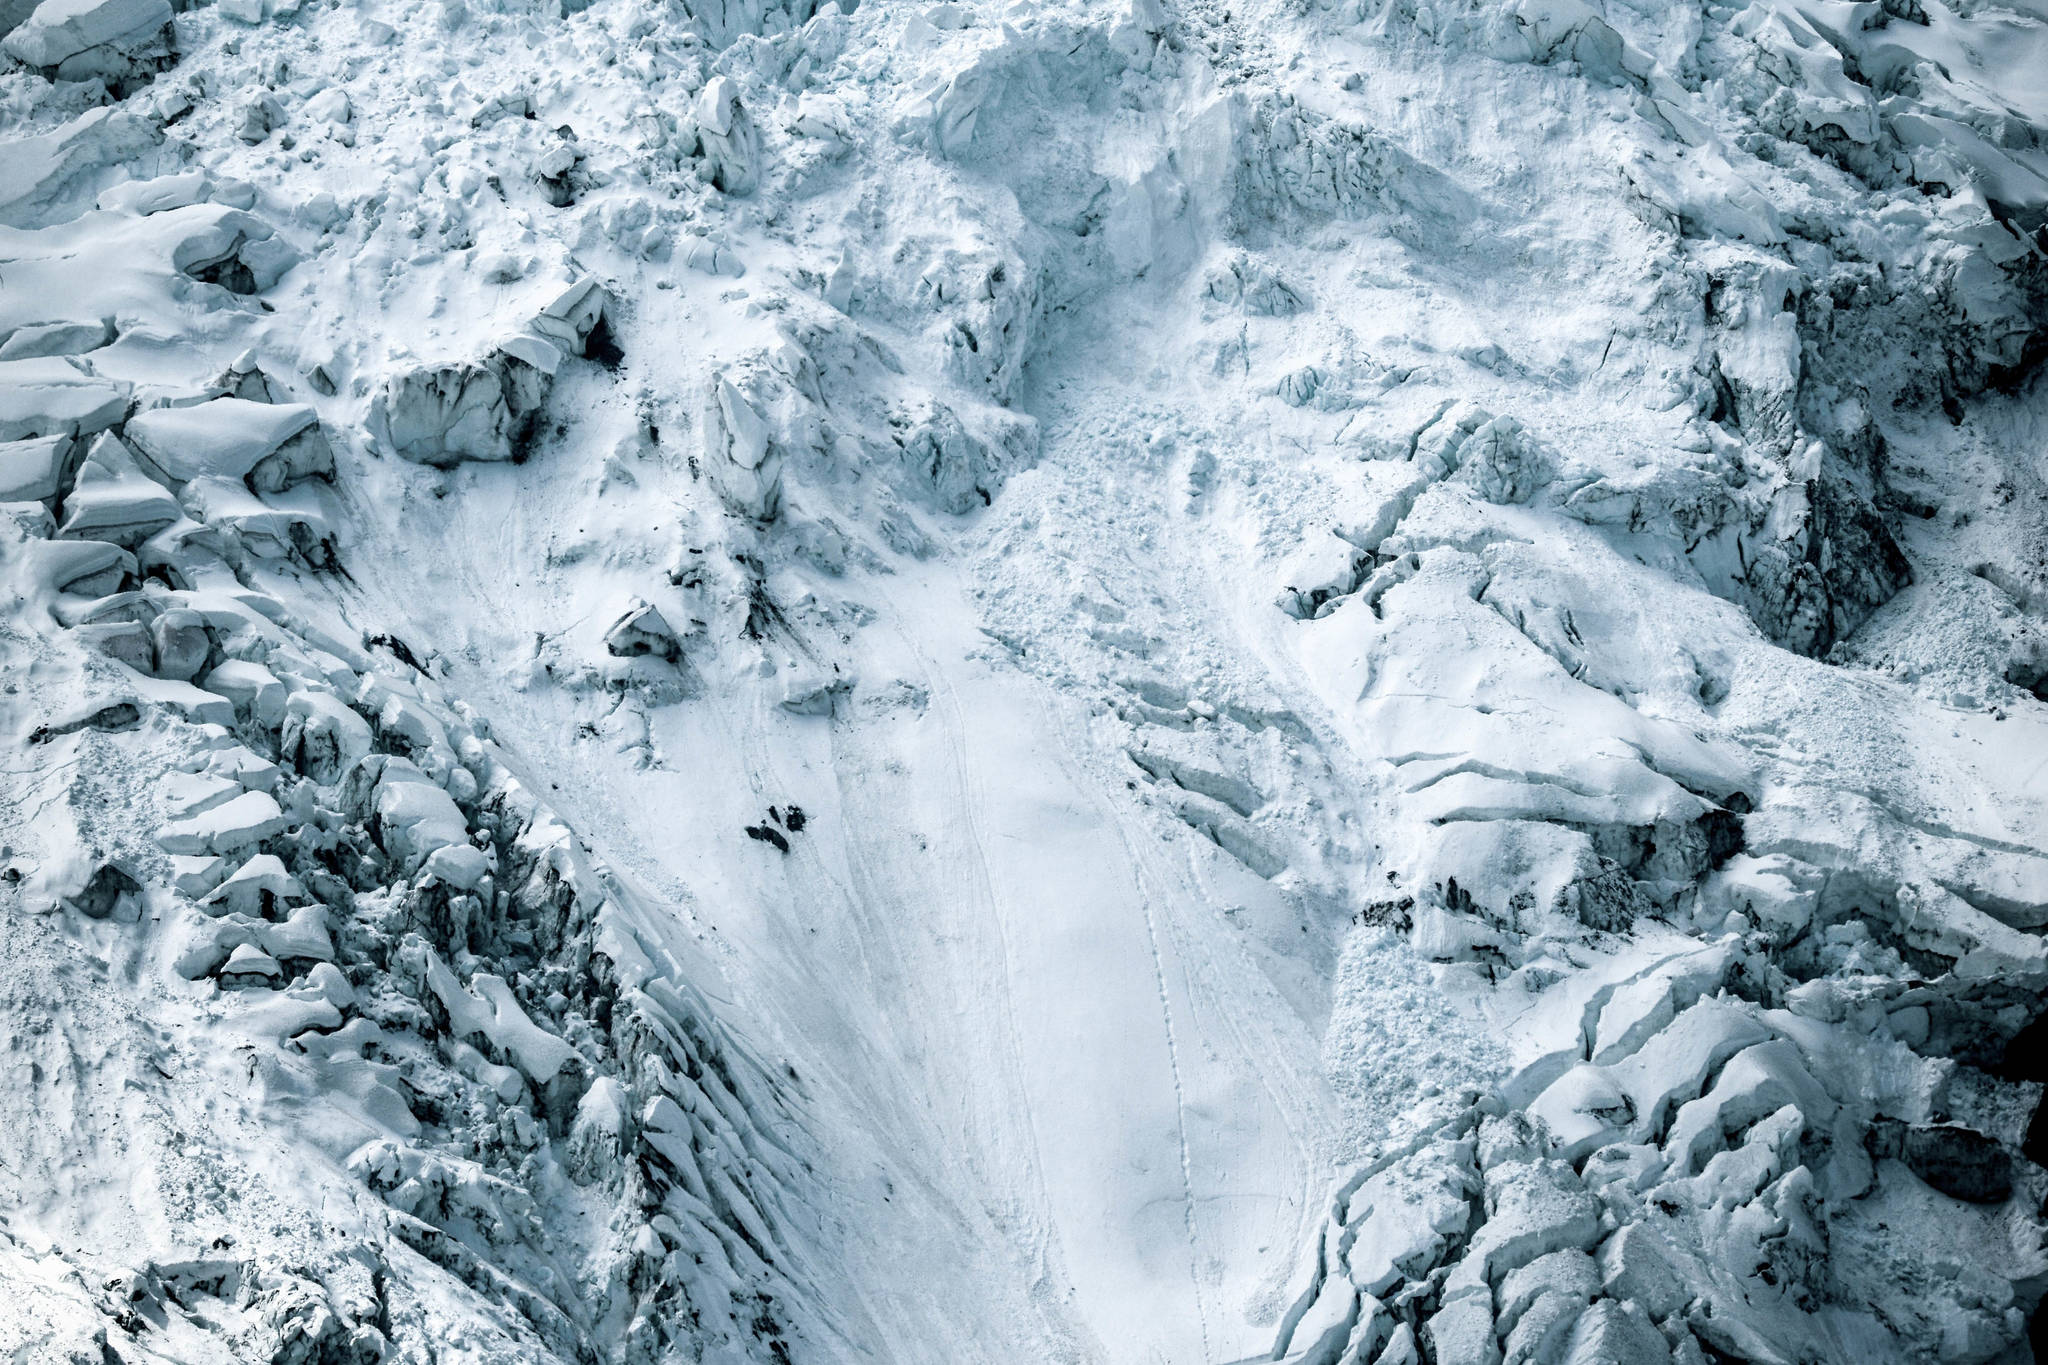 Snowboarder dies in avalanche near Haines